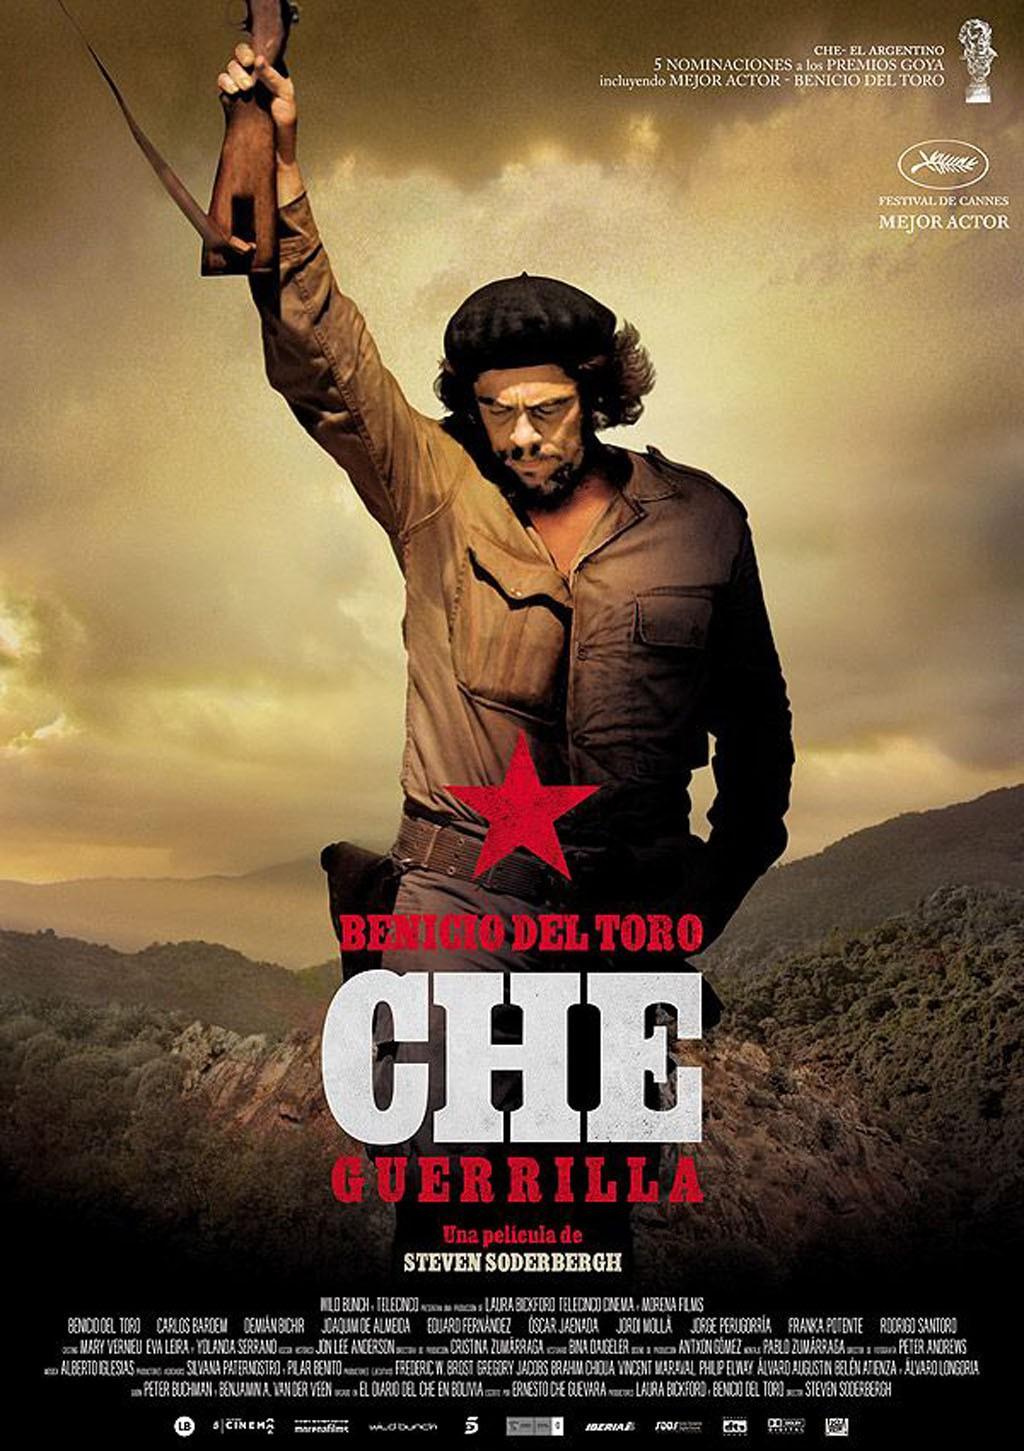 GRUPO 2: Trailer Che, el argentino y cartel de la pelí cula, Che, guerrillero, Steven Soderbergh Completa : Presenta los documentos y precisa el contexto histórico : Apunta en el vídeo las palabras